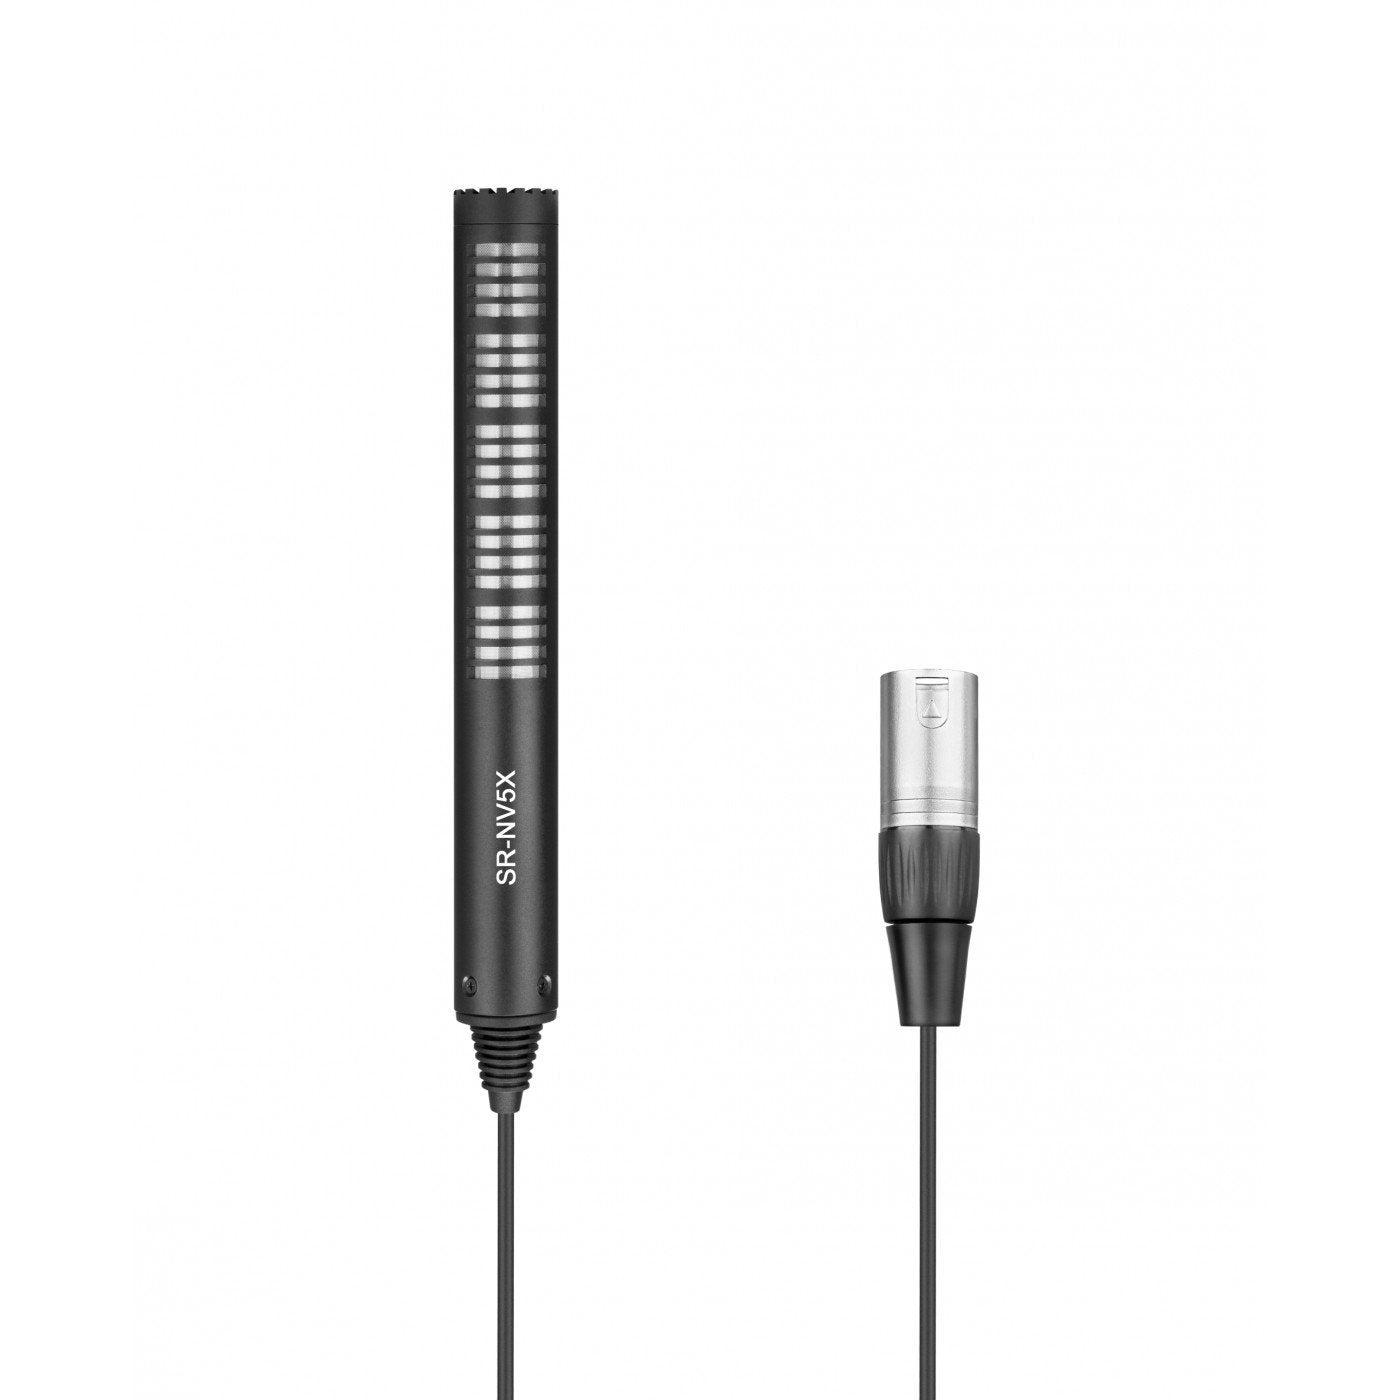 Saramonic SR-NV5X microfono a condensatore con connettore XLR